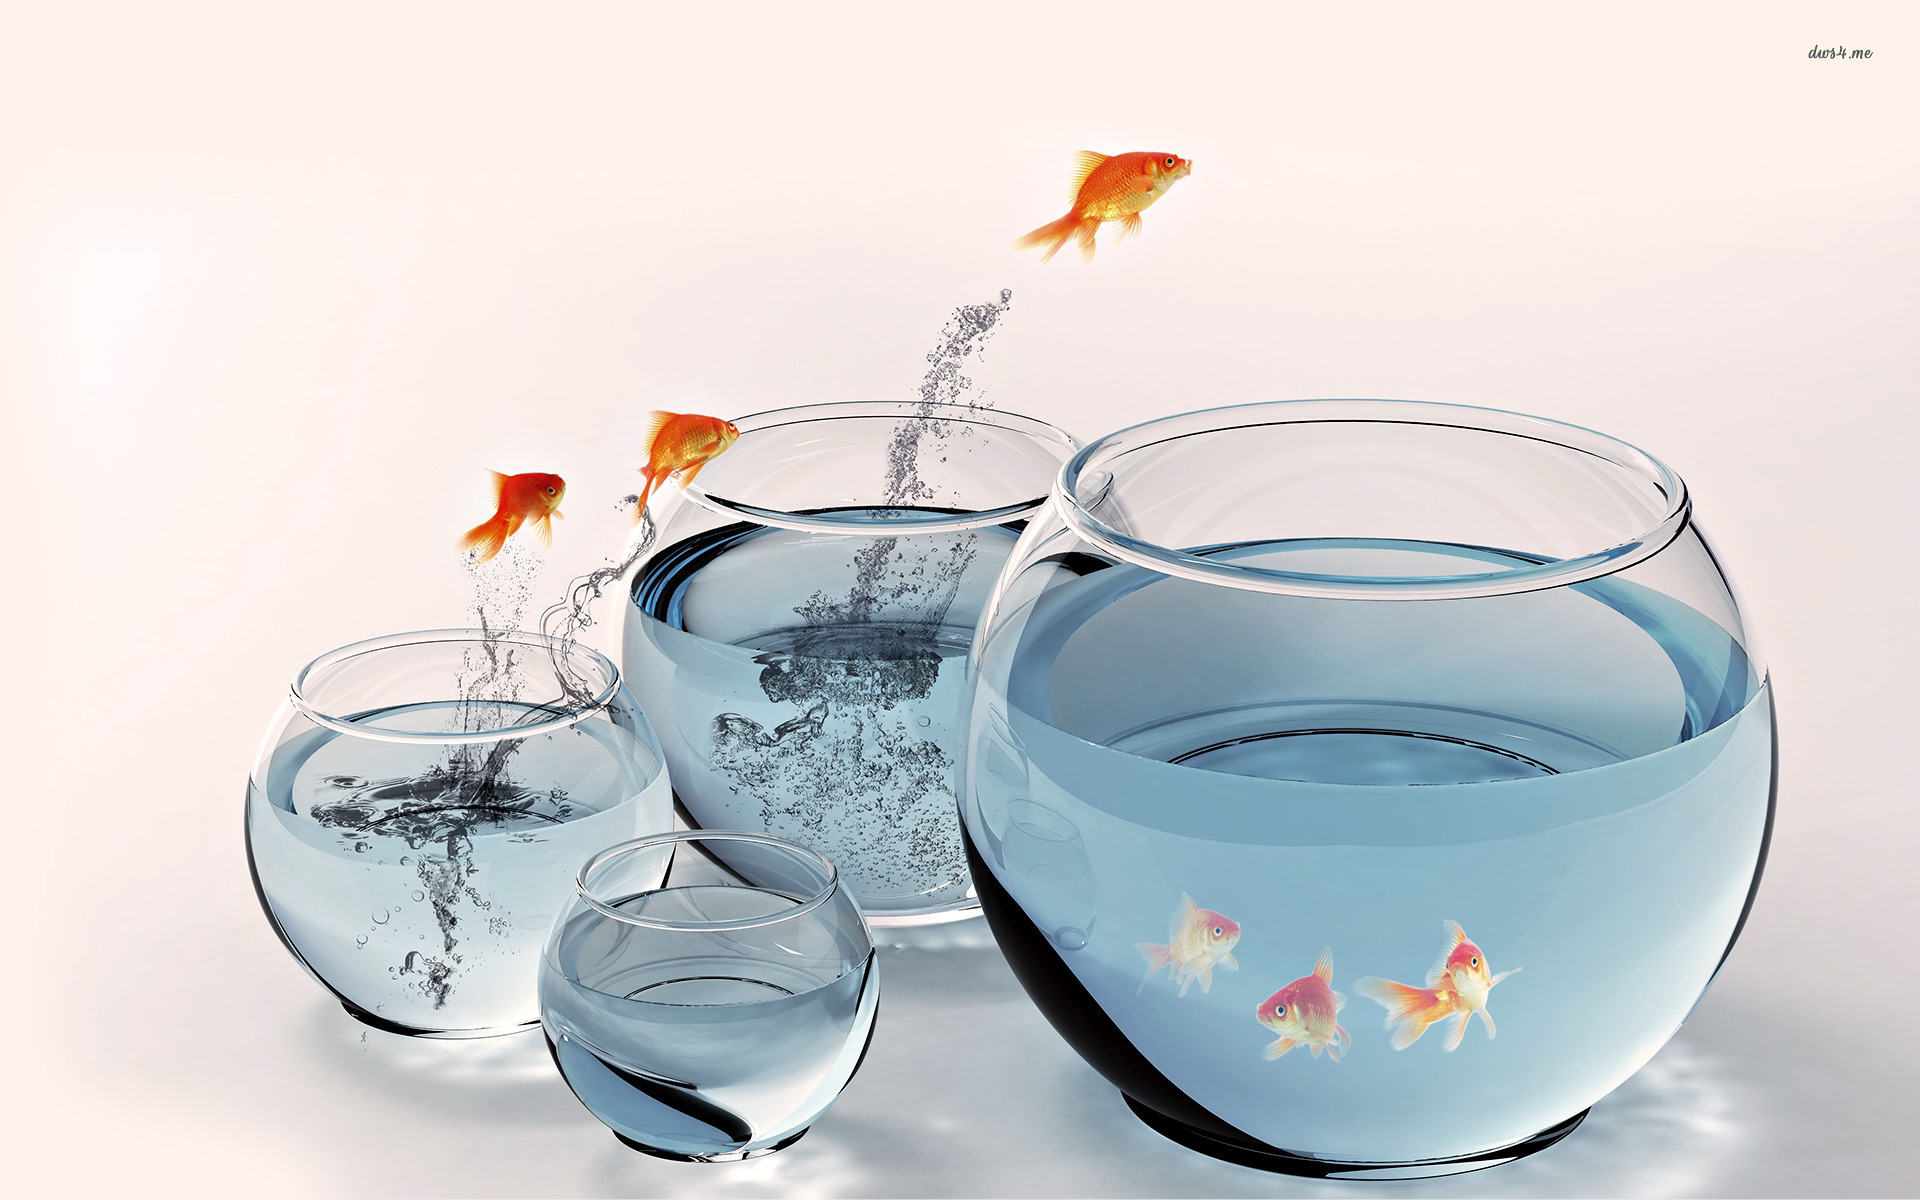 Скачать обои бесплатно Животные, Рыба, Золотая Рыбка картинка на рабочий стол ПК